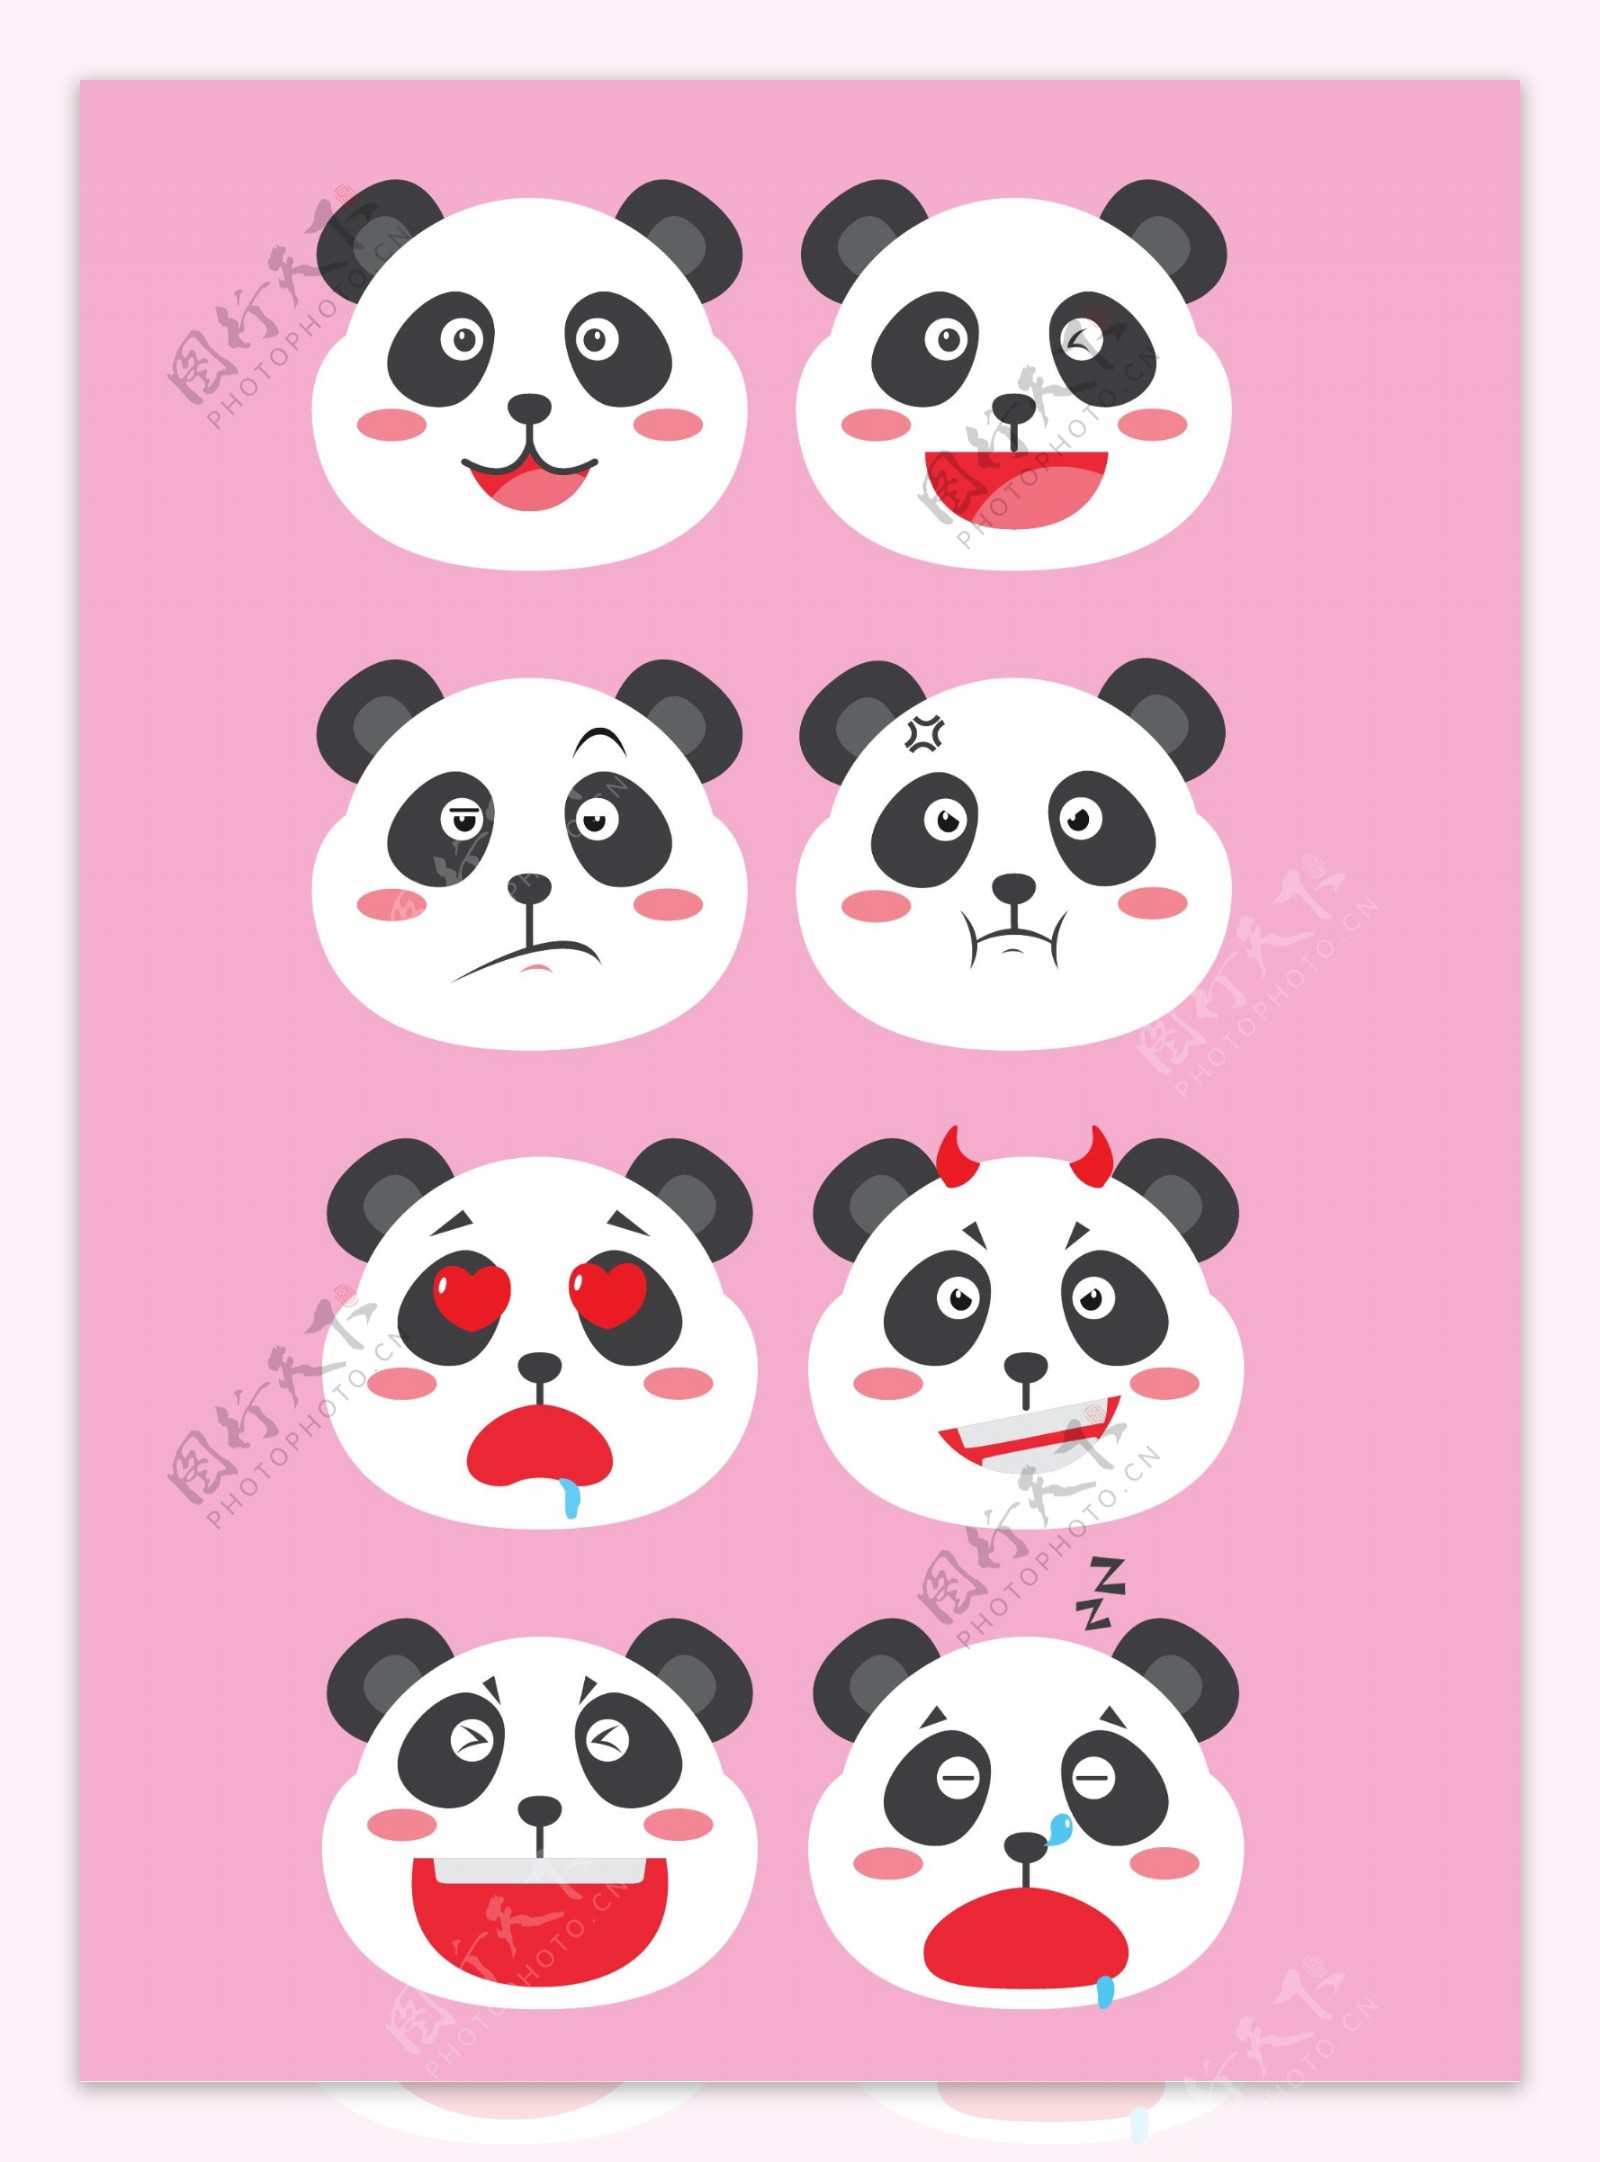 矢量素材卡通熊猫装饰元素表情包图案集合